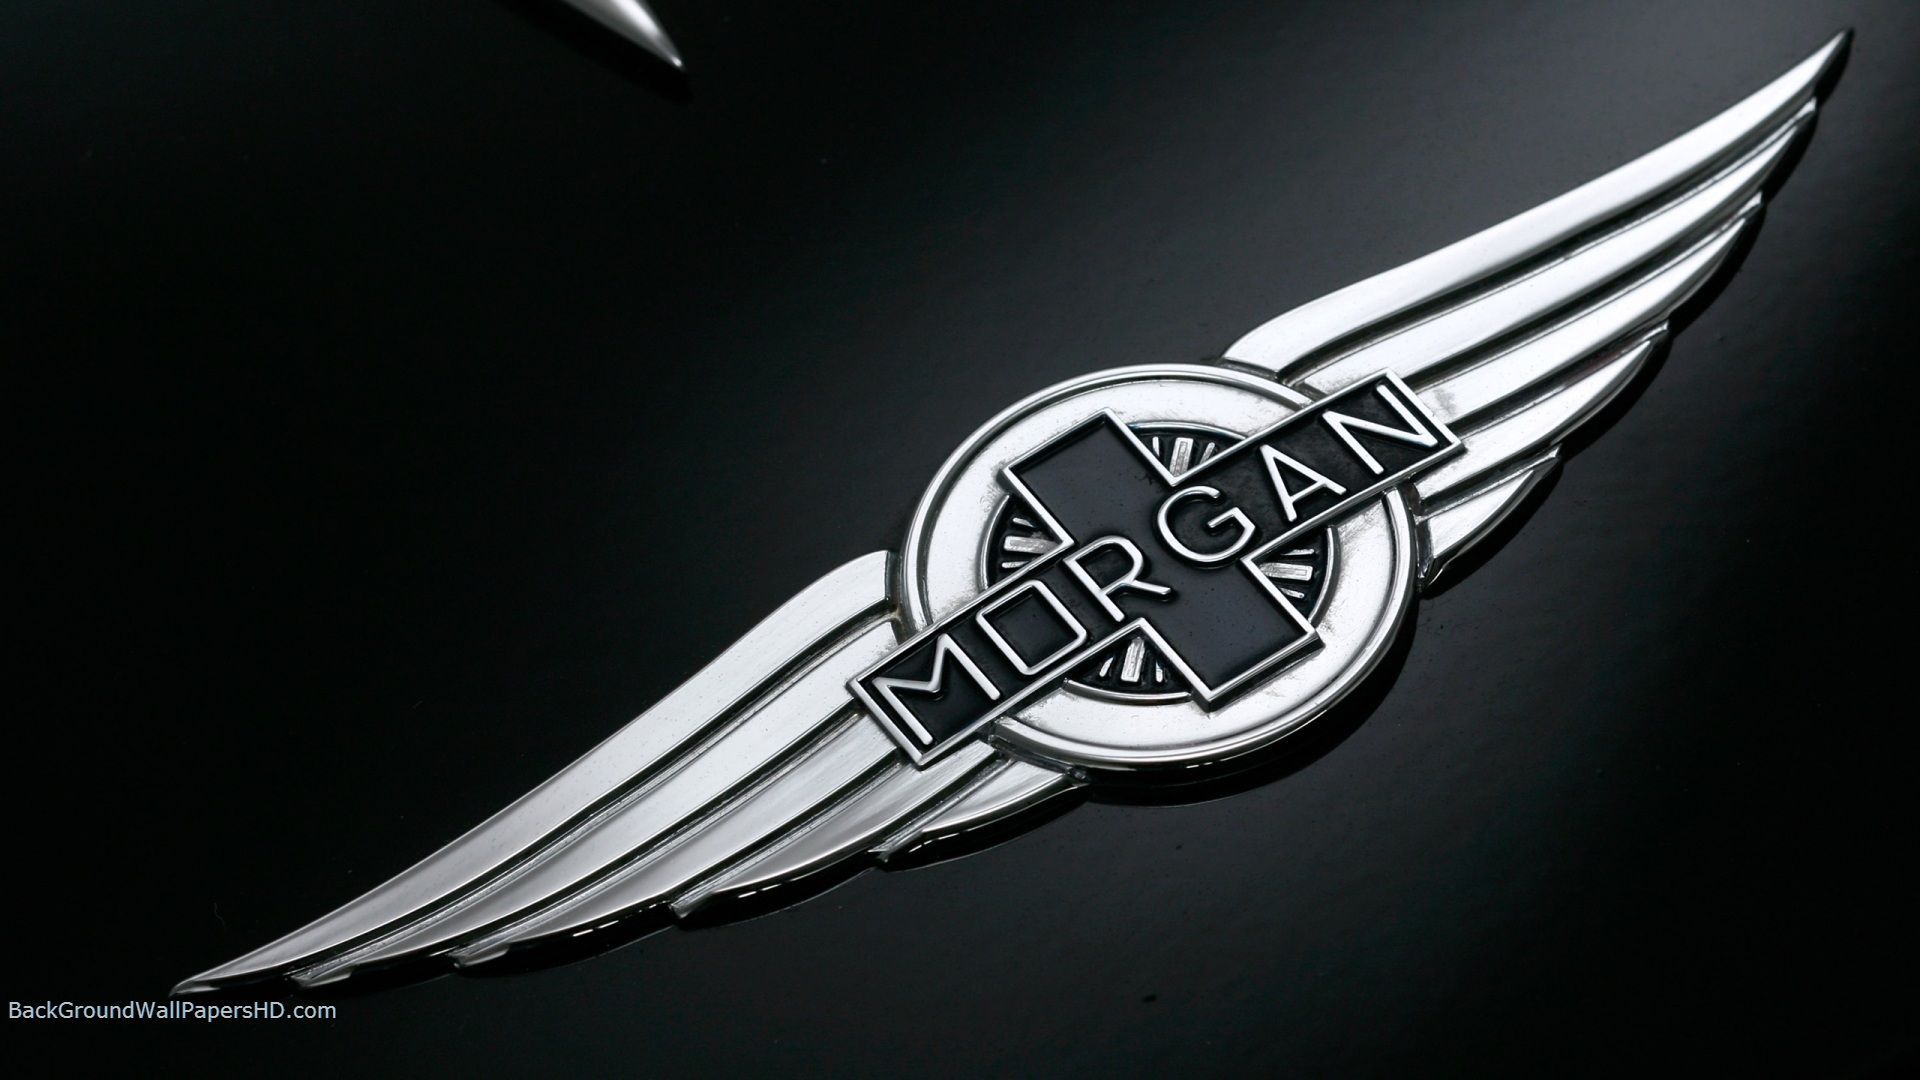 Morgan Car Logo Wallpaper 1080p. Concept cars, Morgan cars, Jaguar car logo